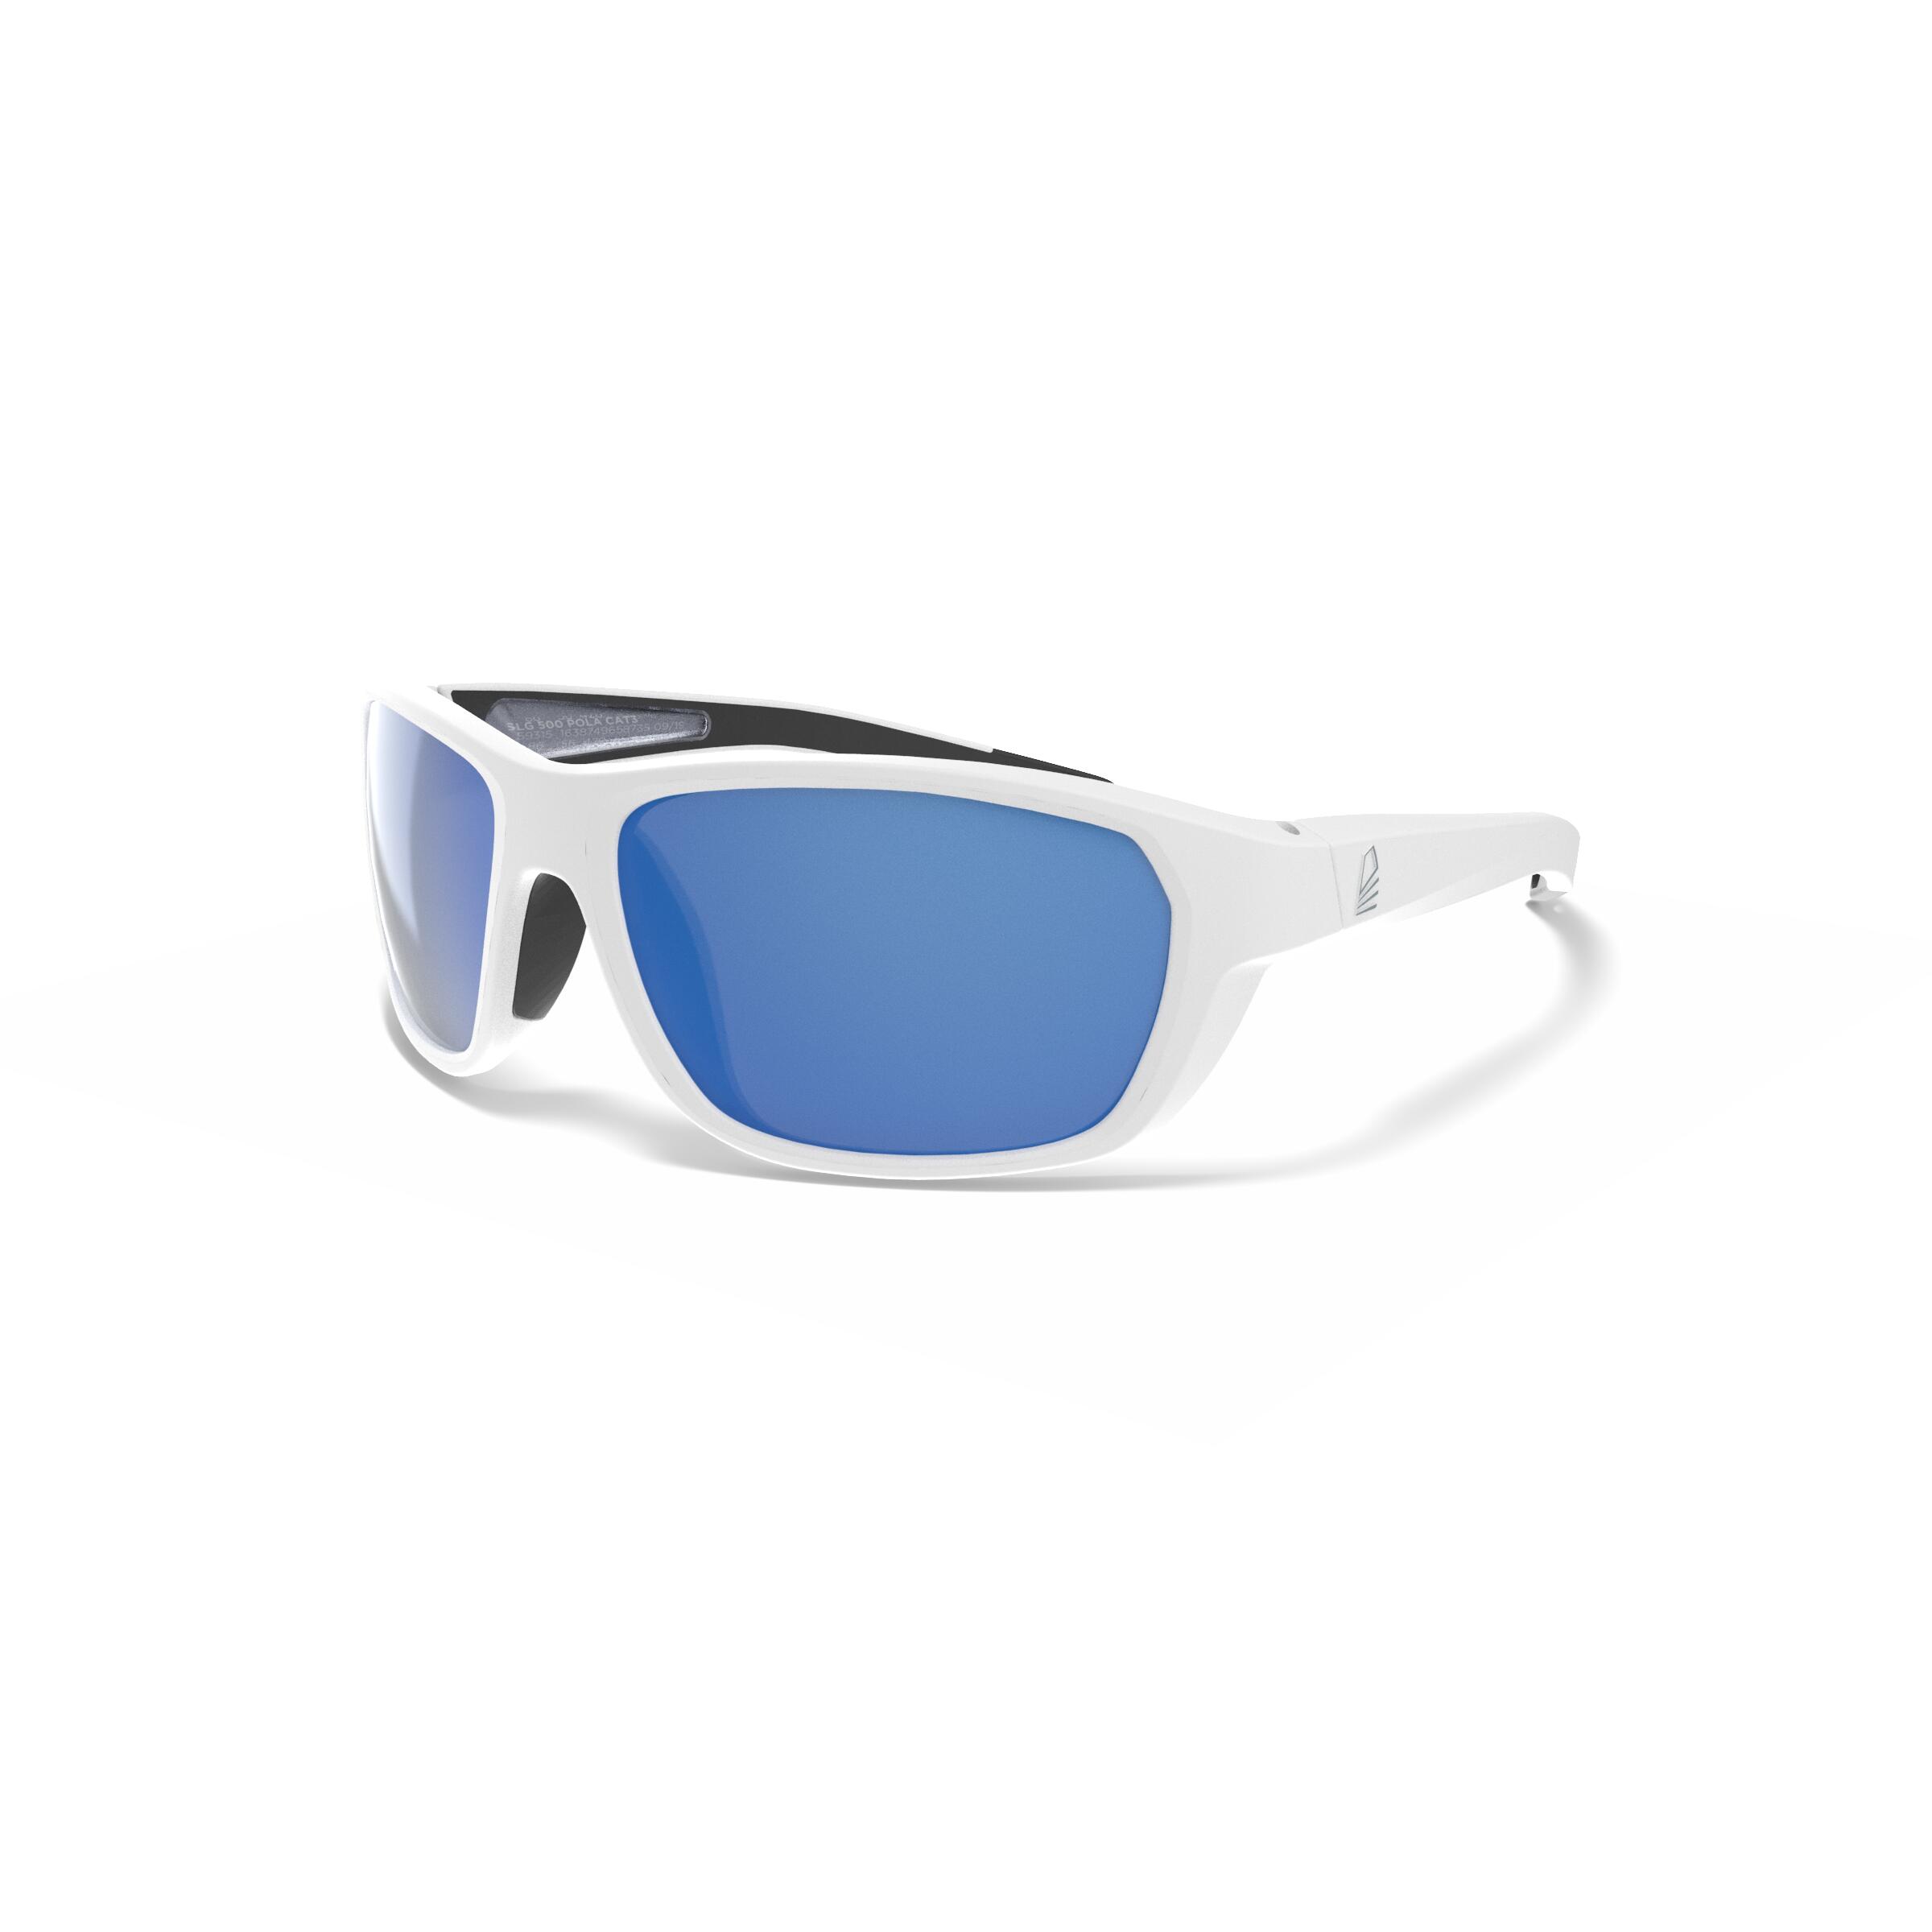 TRIBORD Sonnenbrille Segeln Damen/Herren S polarisierend schwimmfähig - 500 weiss/blau EINHEITSGRÖSSE